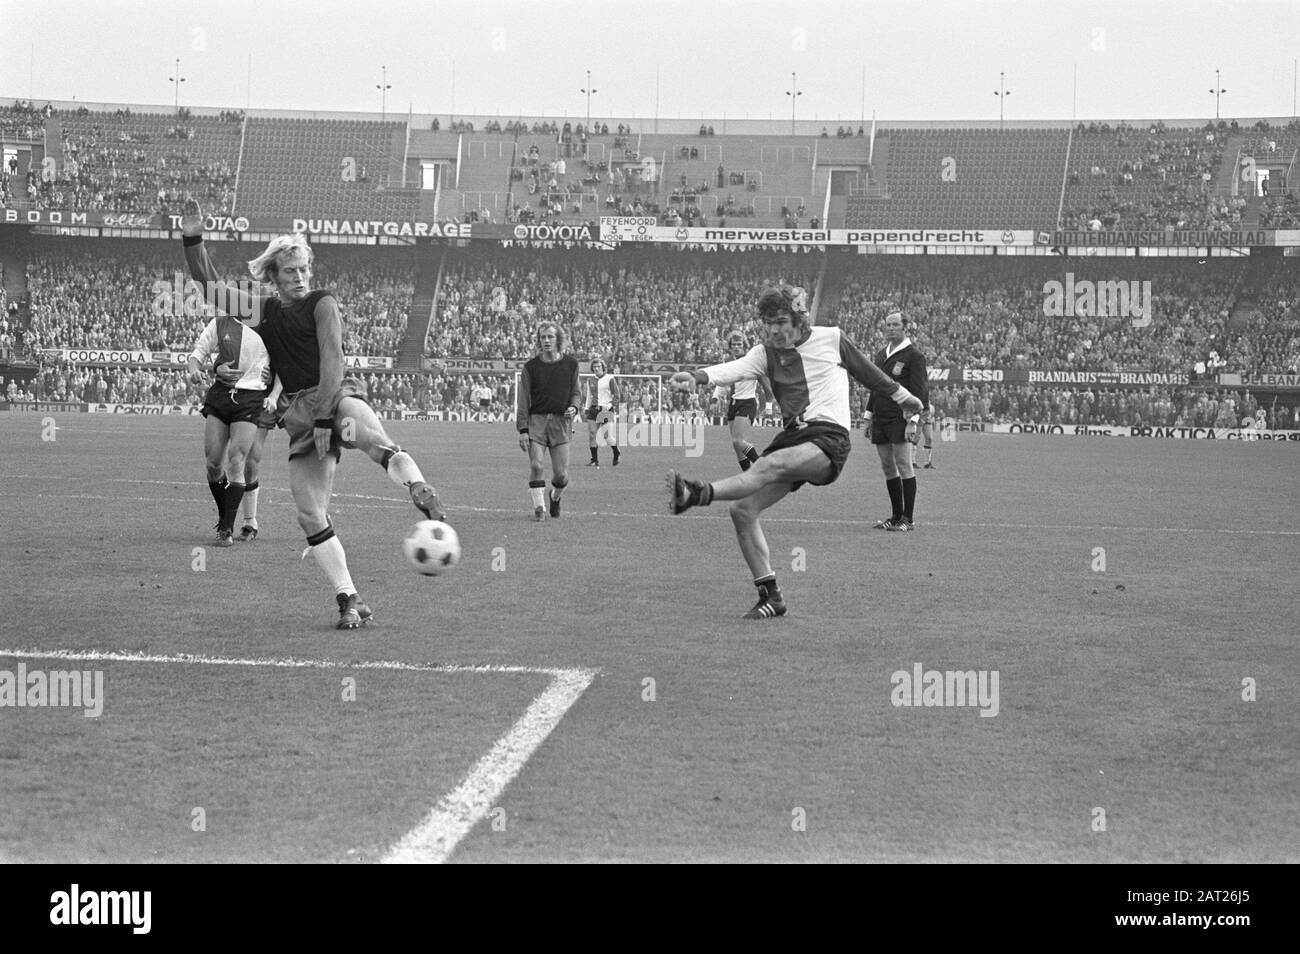 Feyenoord gegen Excelsior 7-0, Wim van Hanegem (rechts) punktet mit 4-0 Datum: 15. Oktober 1972 Schlüsselwörter: Sport, Fußball persönlicher Name: Hanegem, William von Institution Name: Excelsior, Feyenoord Stockfoto